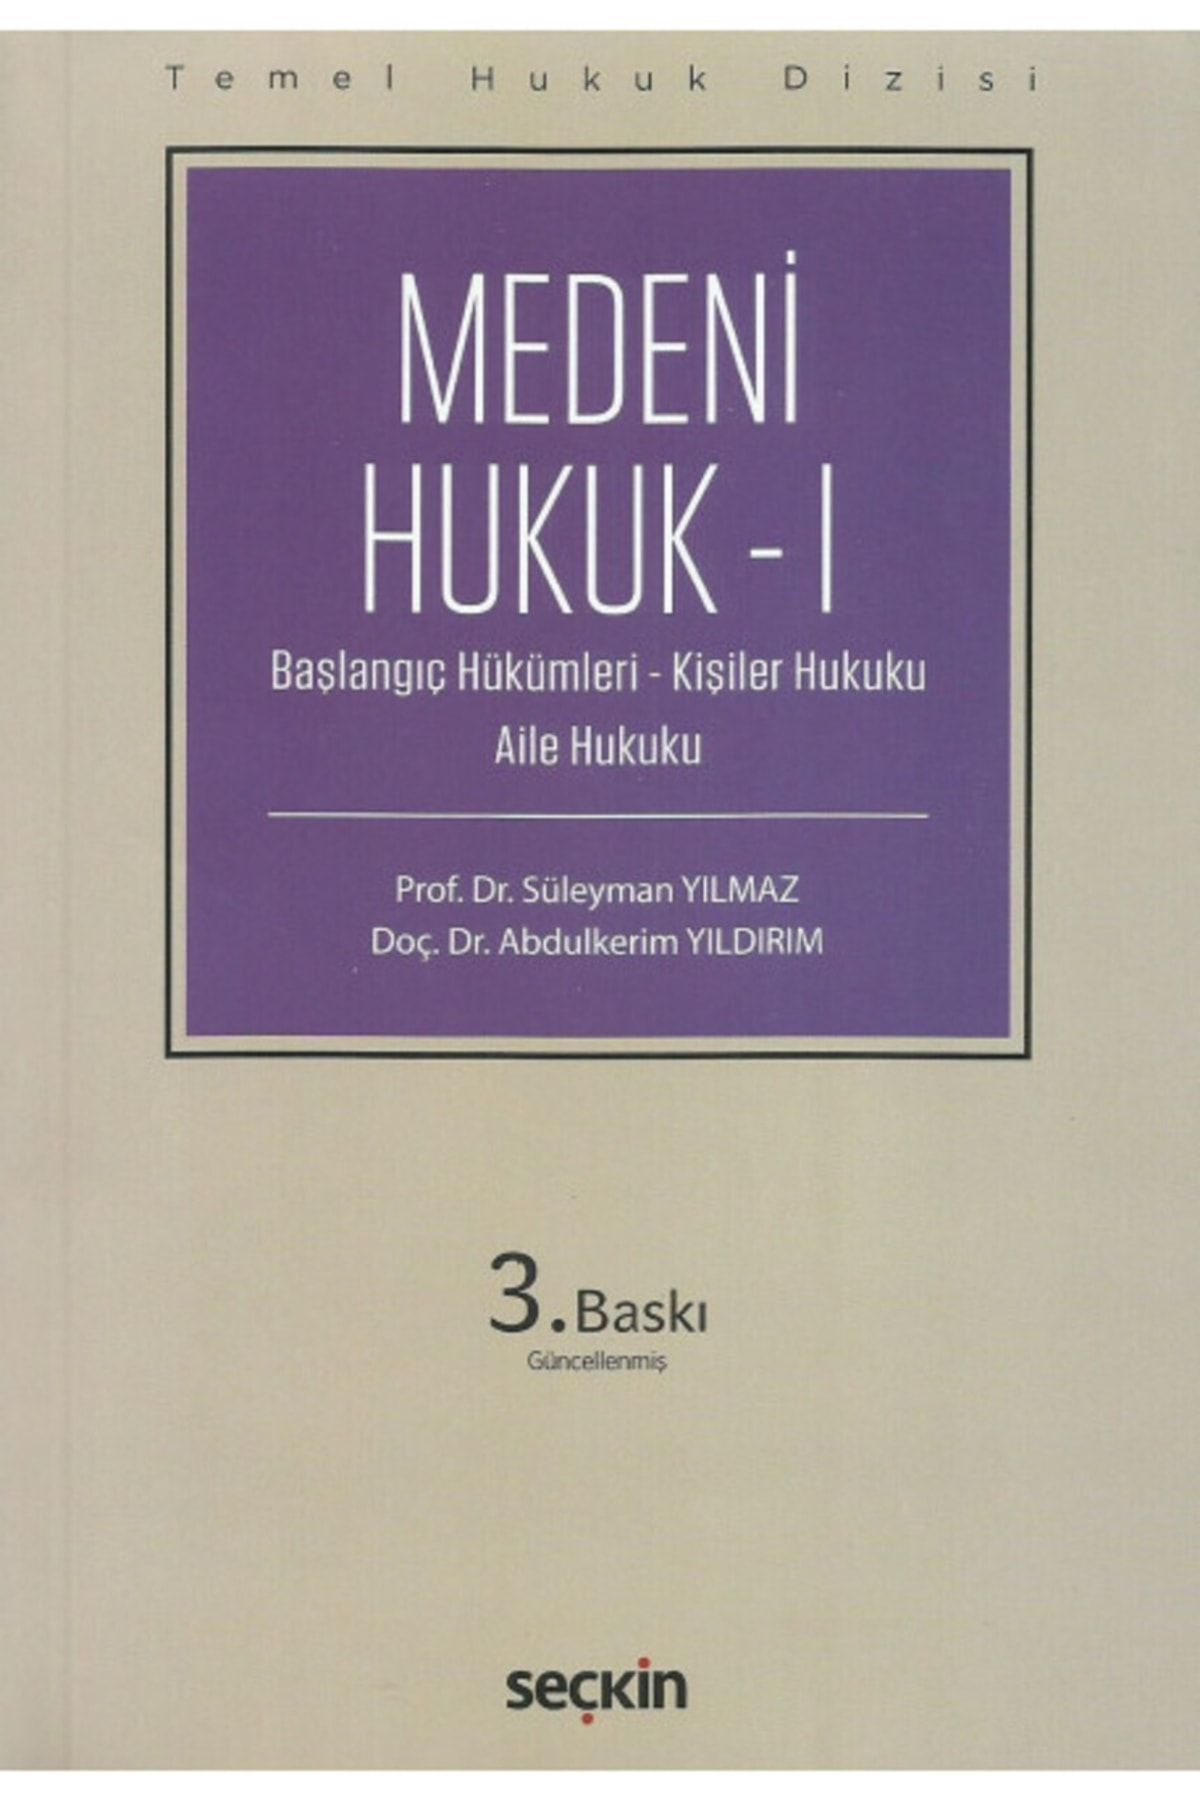 Seçkin Yayınları Temel Hukuk Dizisi Medeni Hukuk – I (THD) Prof. Dr. Süleyman Yılmaz- Eylül 2022 / 3. Baskı